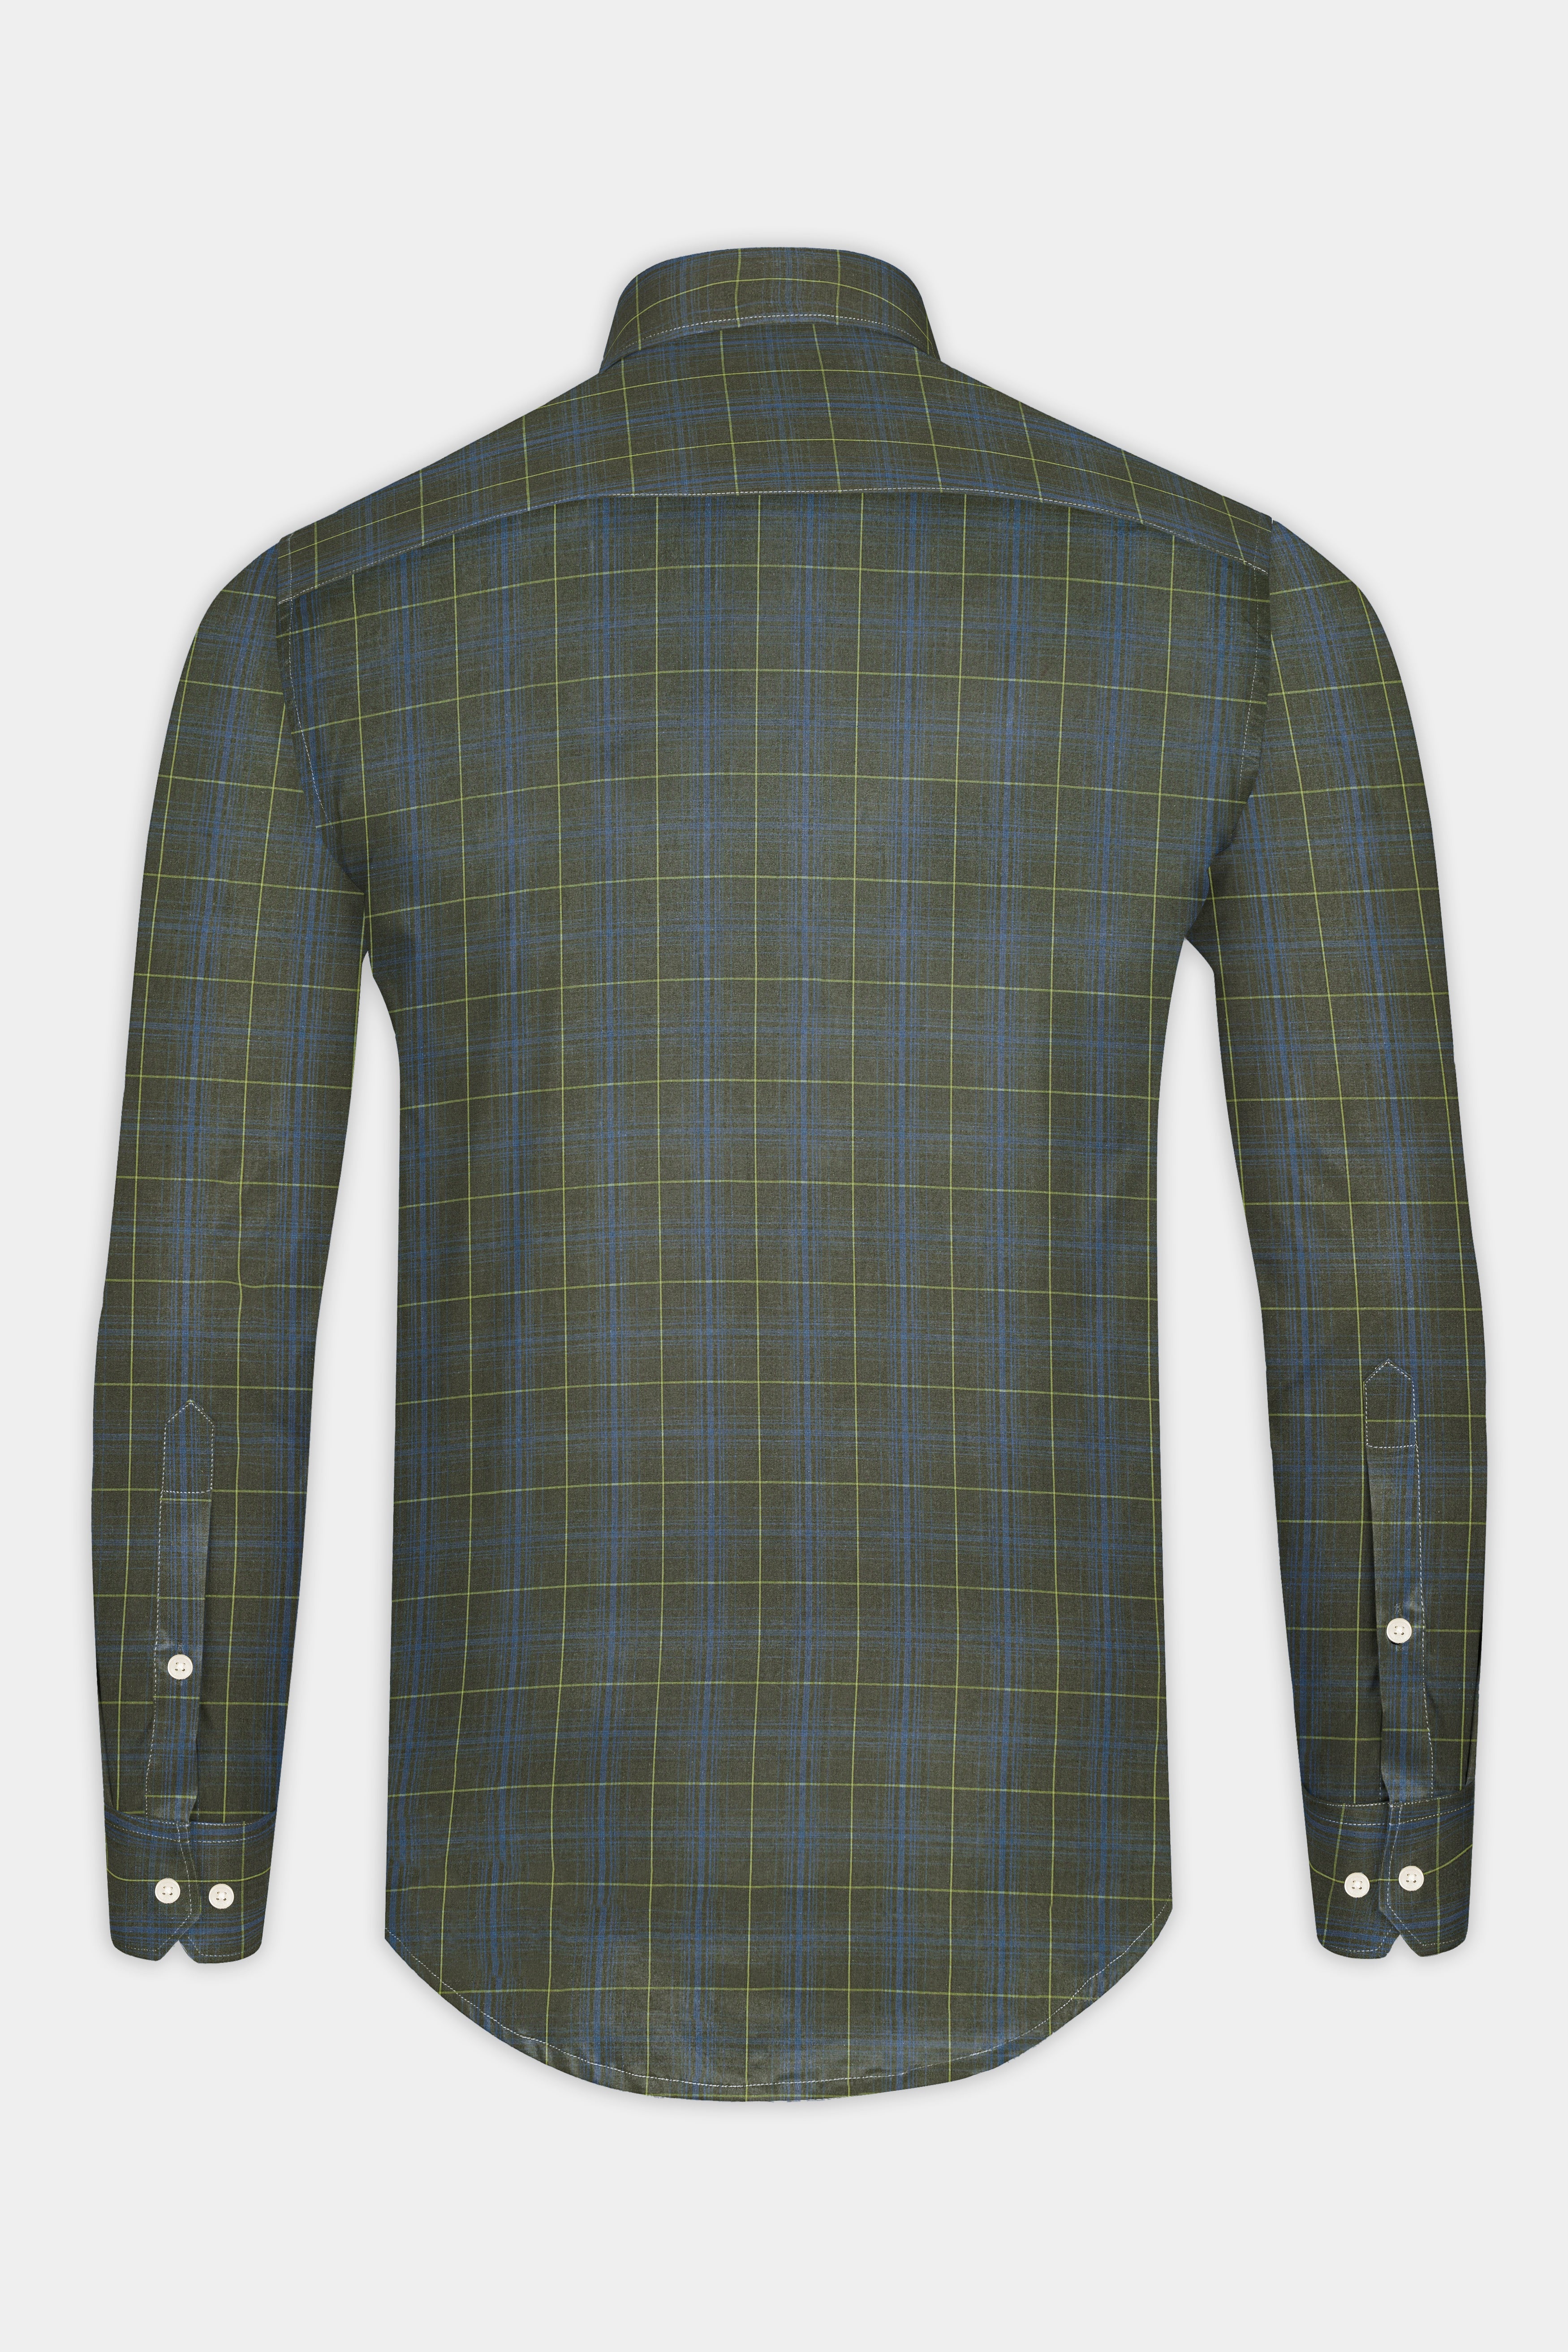 Carbon Gray Checkered Poplin Giza Cotton Shirt